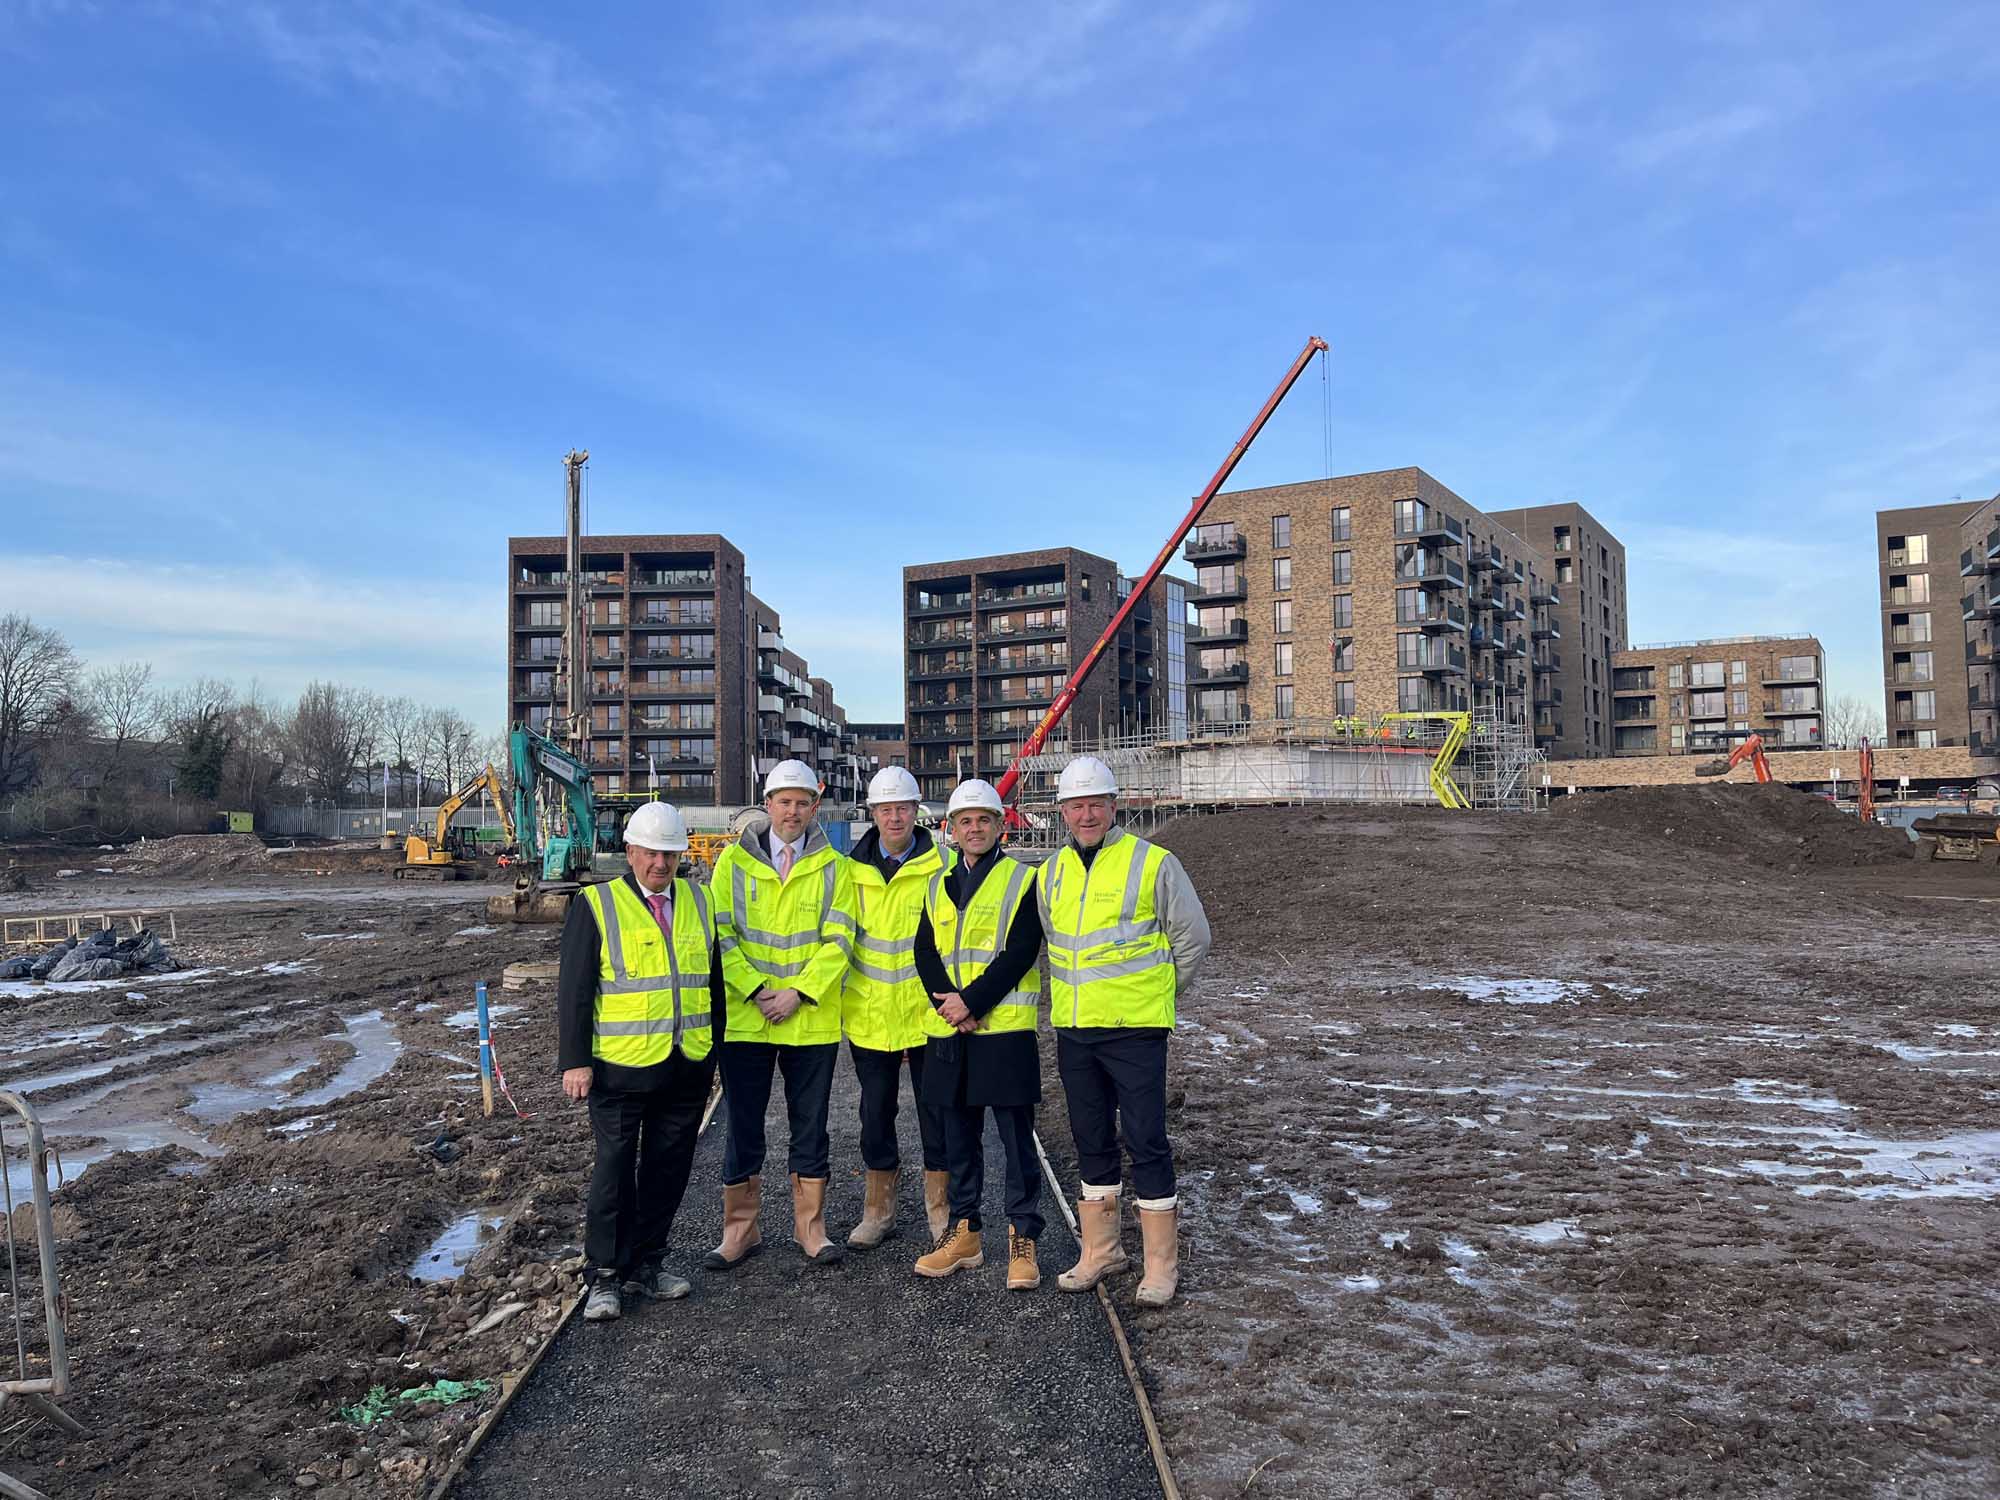 Weston Homes commences construction on Dylon Riverside development 